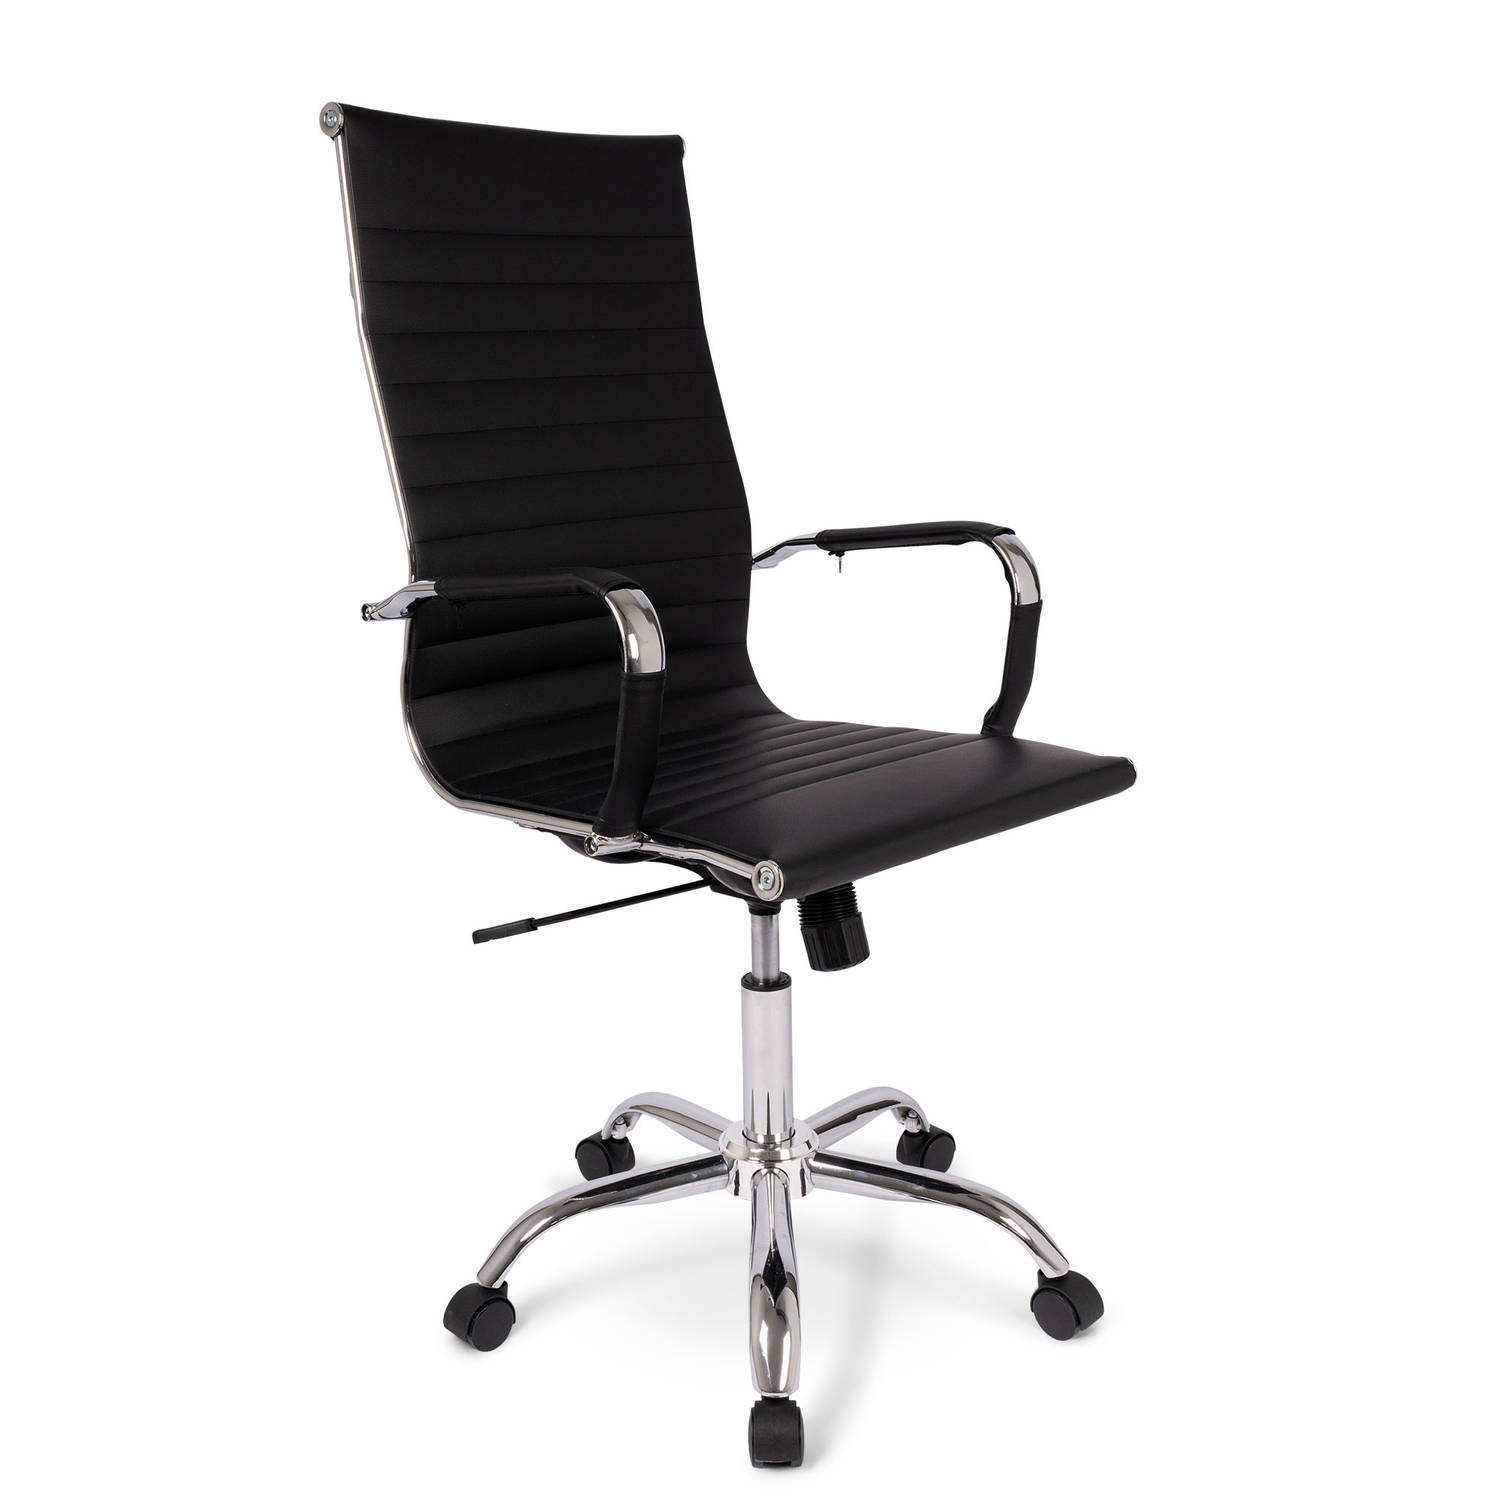 Ergodu Milano Design Ergonomische Bureaustoel - Luxe Office Chair - Strak Design & PU-Leer - Zwart